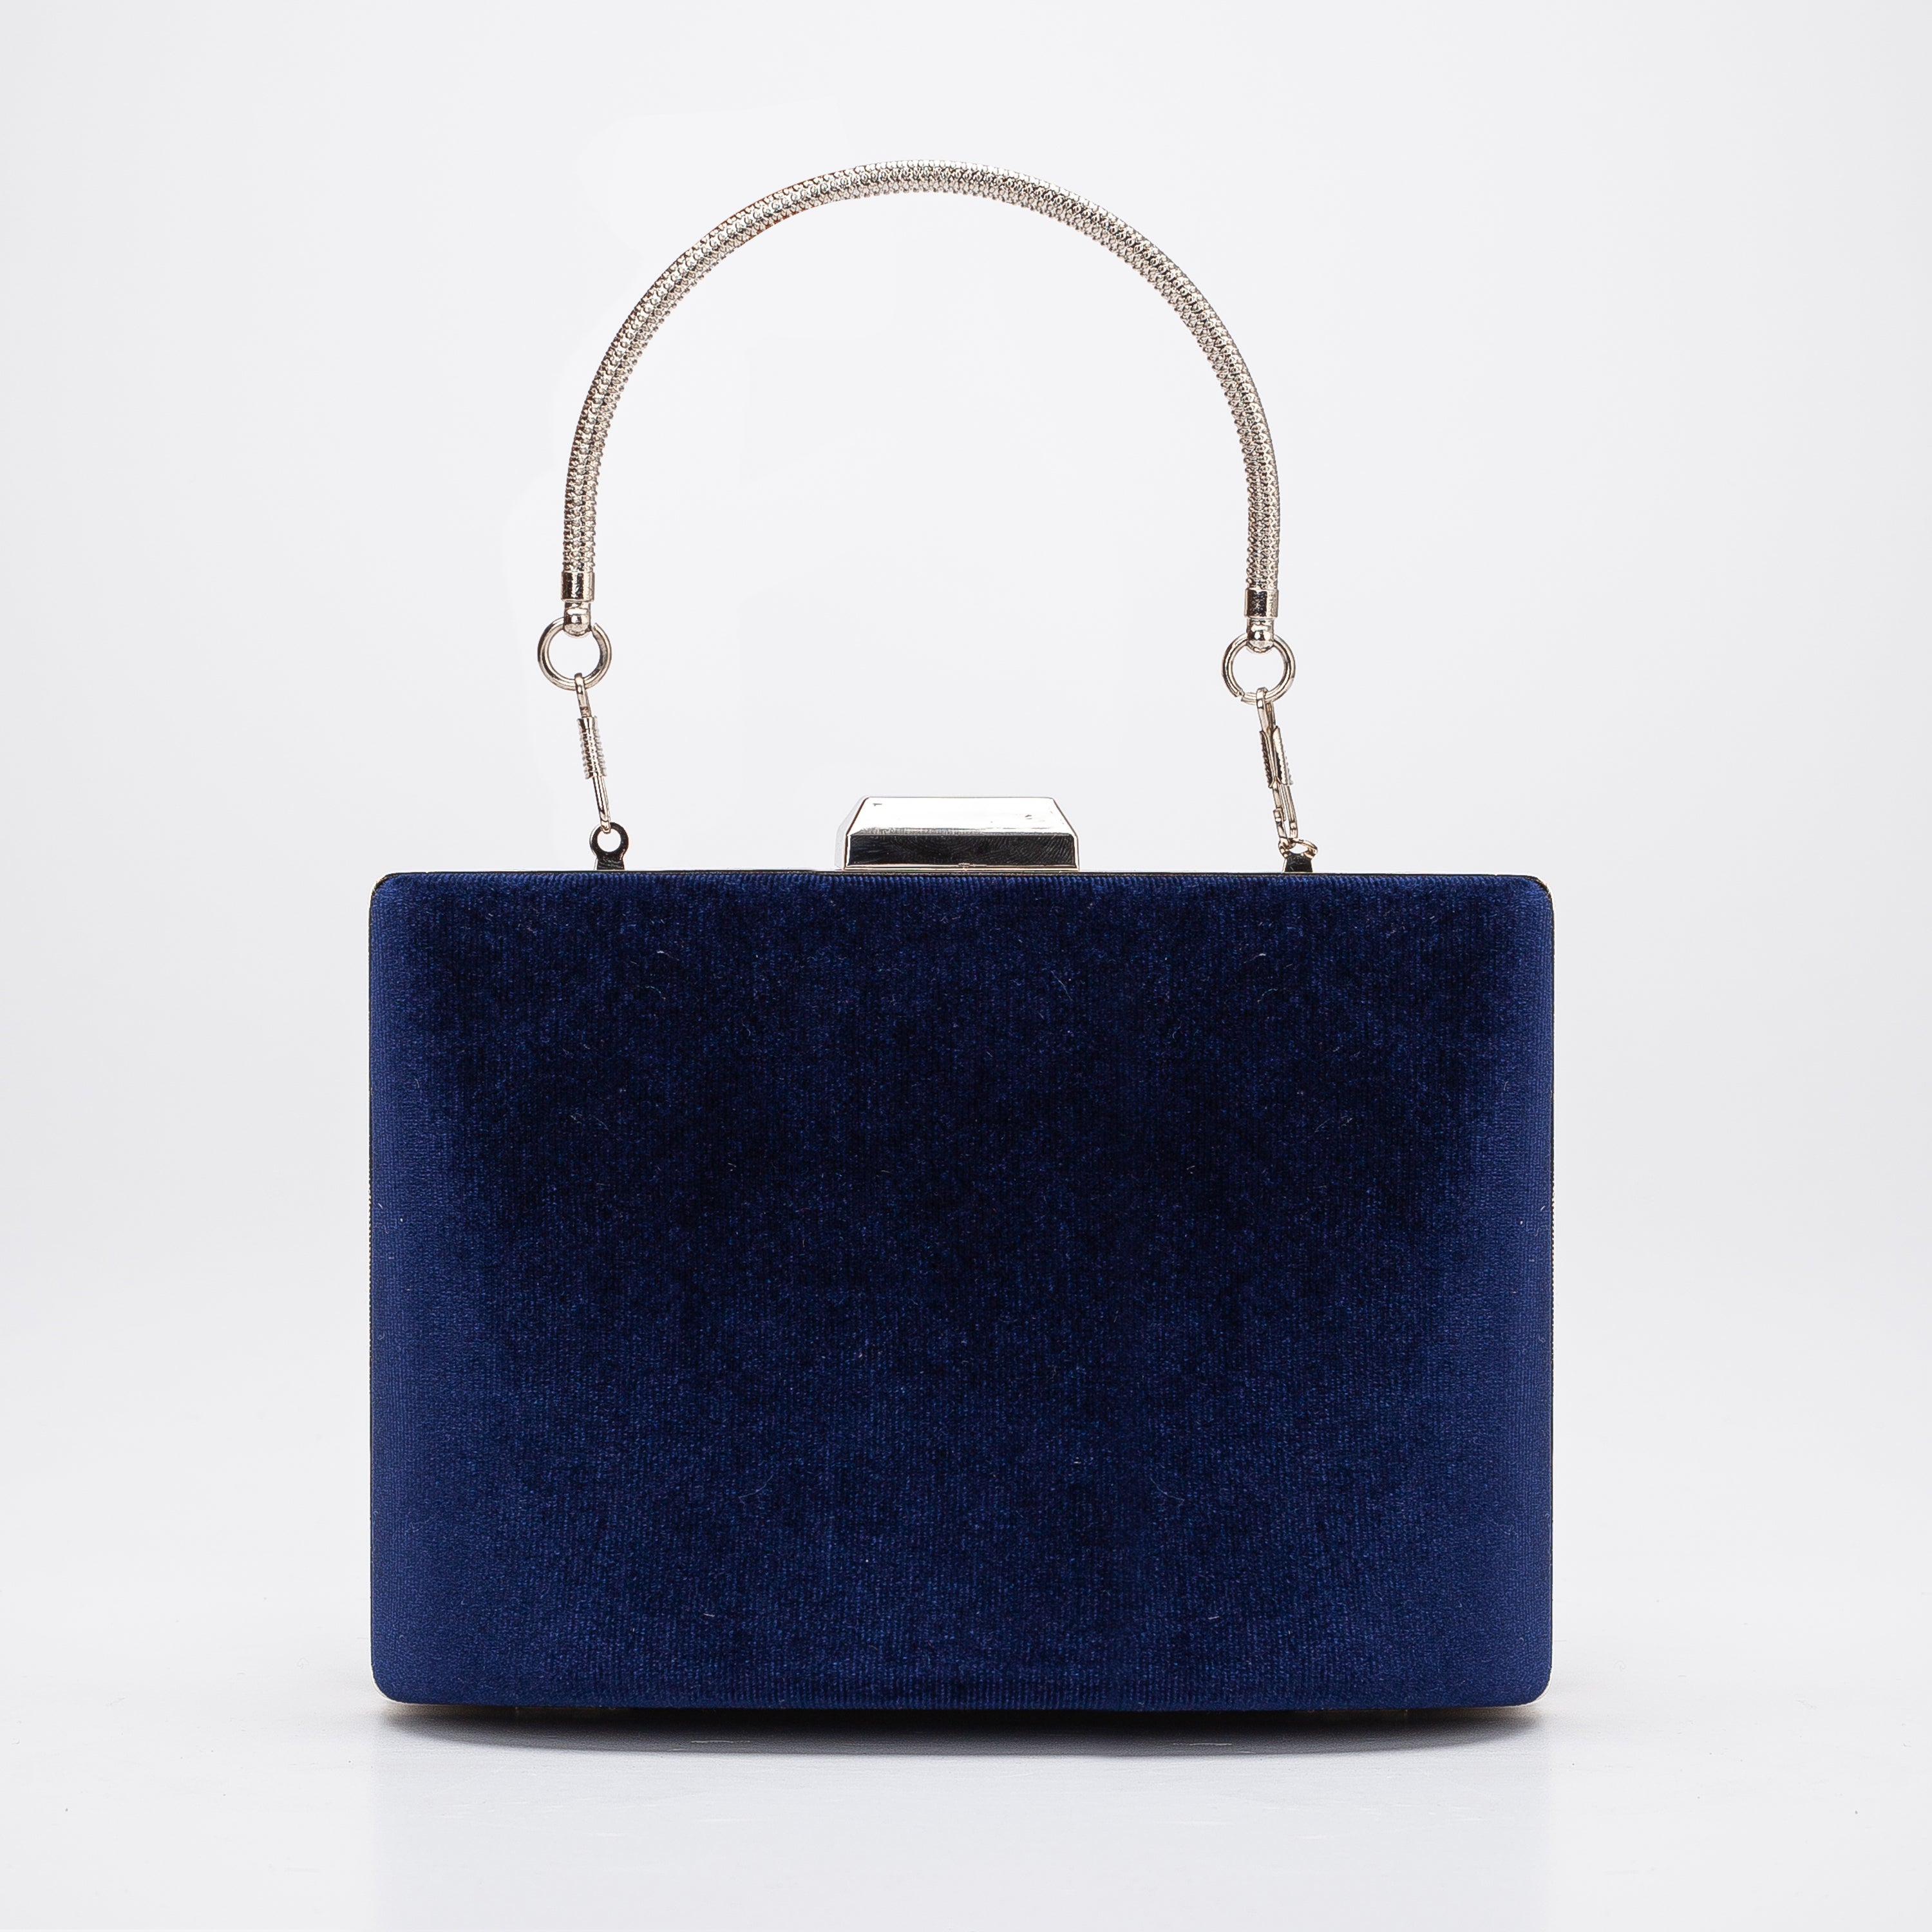 navy blue handbags: Women's Clutches & Evening Bags | Dillard's